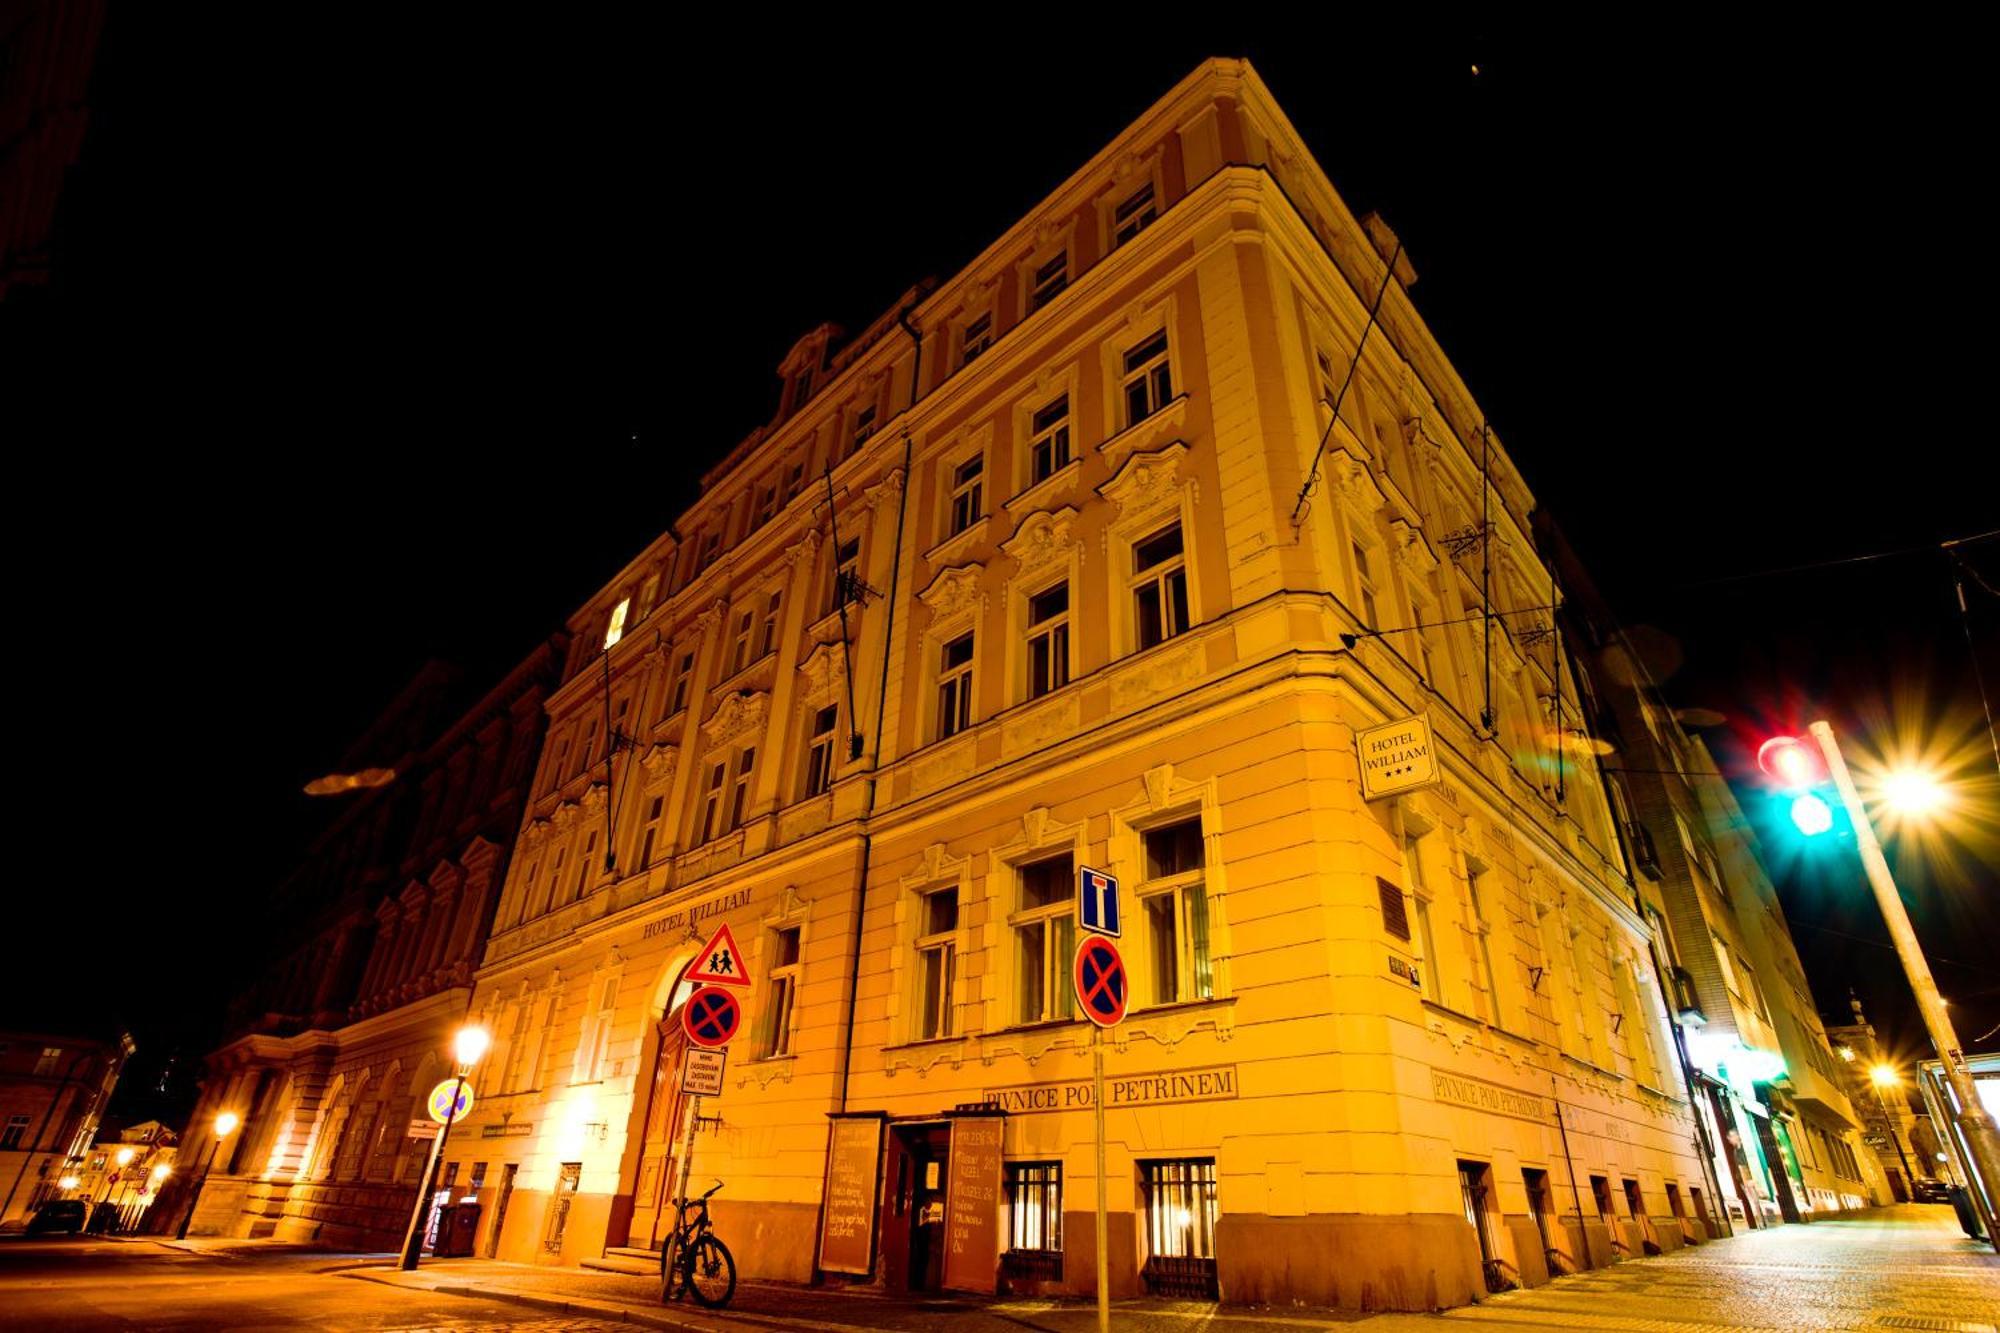 Hotel William Prague Exterior photo